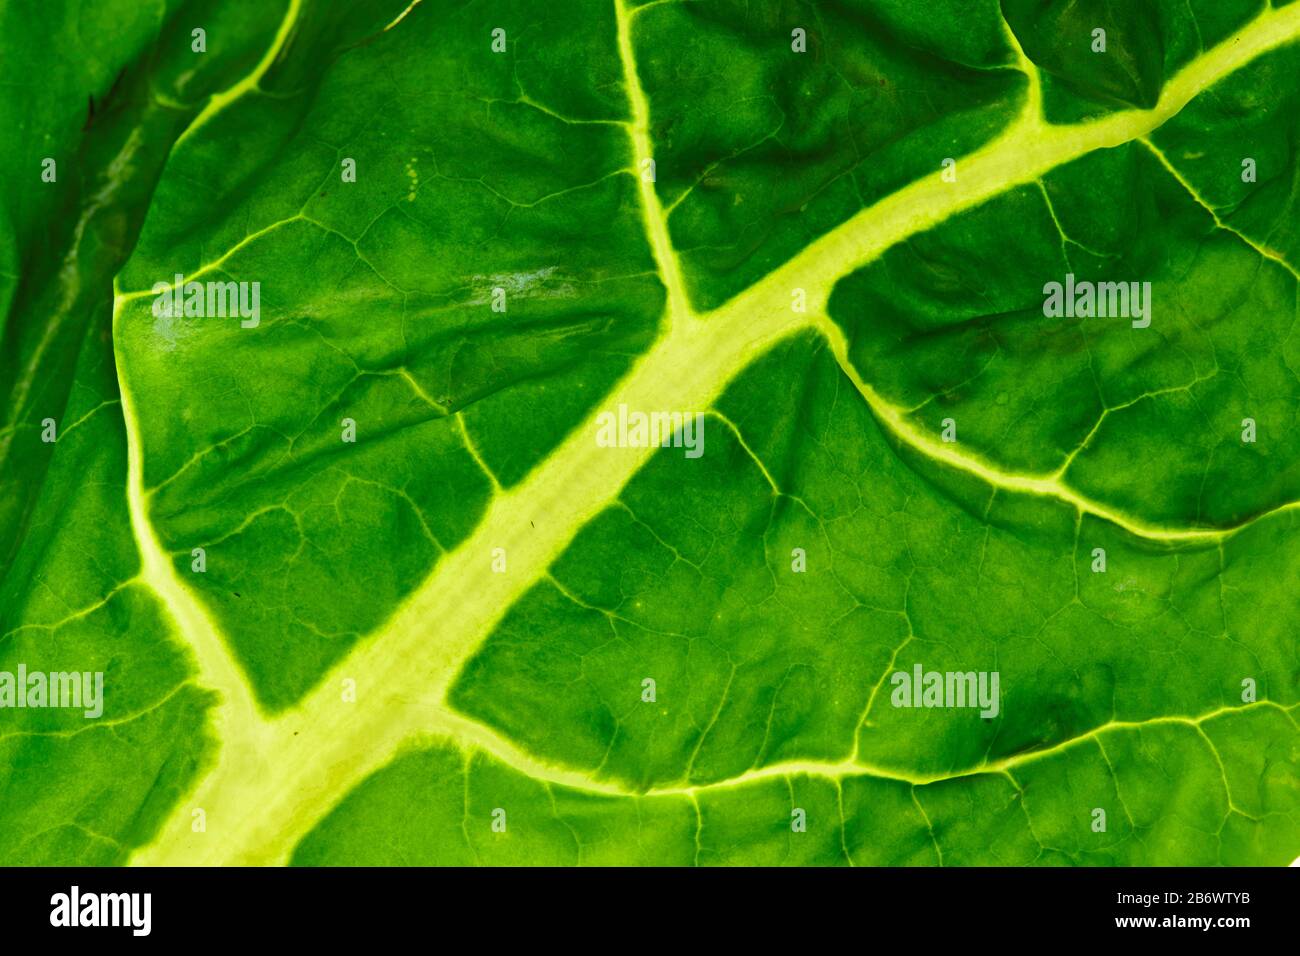 Chard suisse, Chard (Beta vulgaris vulgaris). Gros plan de feuille verte montrant le voile, Allemagne Banque D'Images